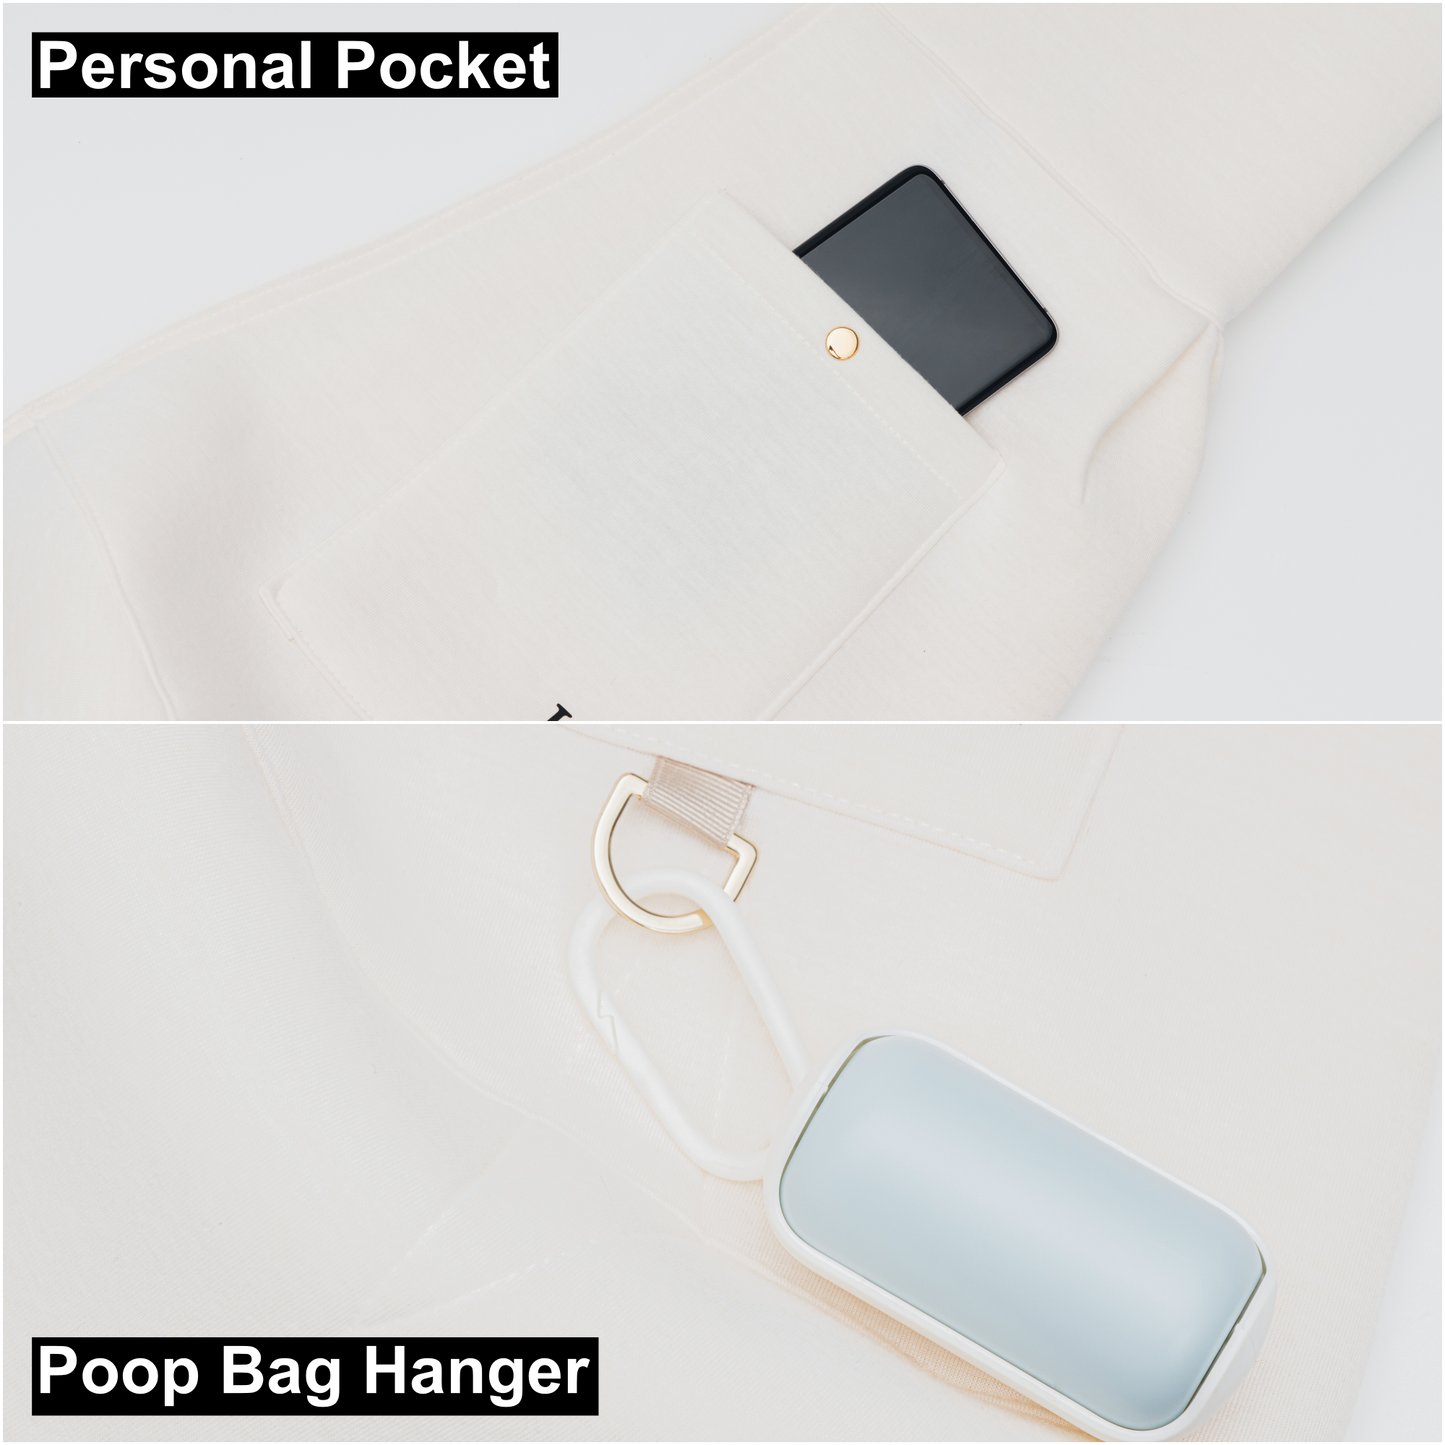 Poop Bag Hanger